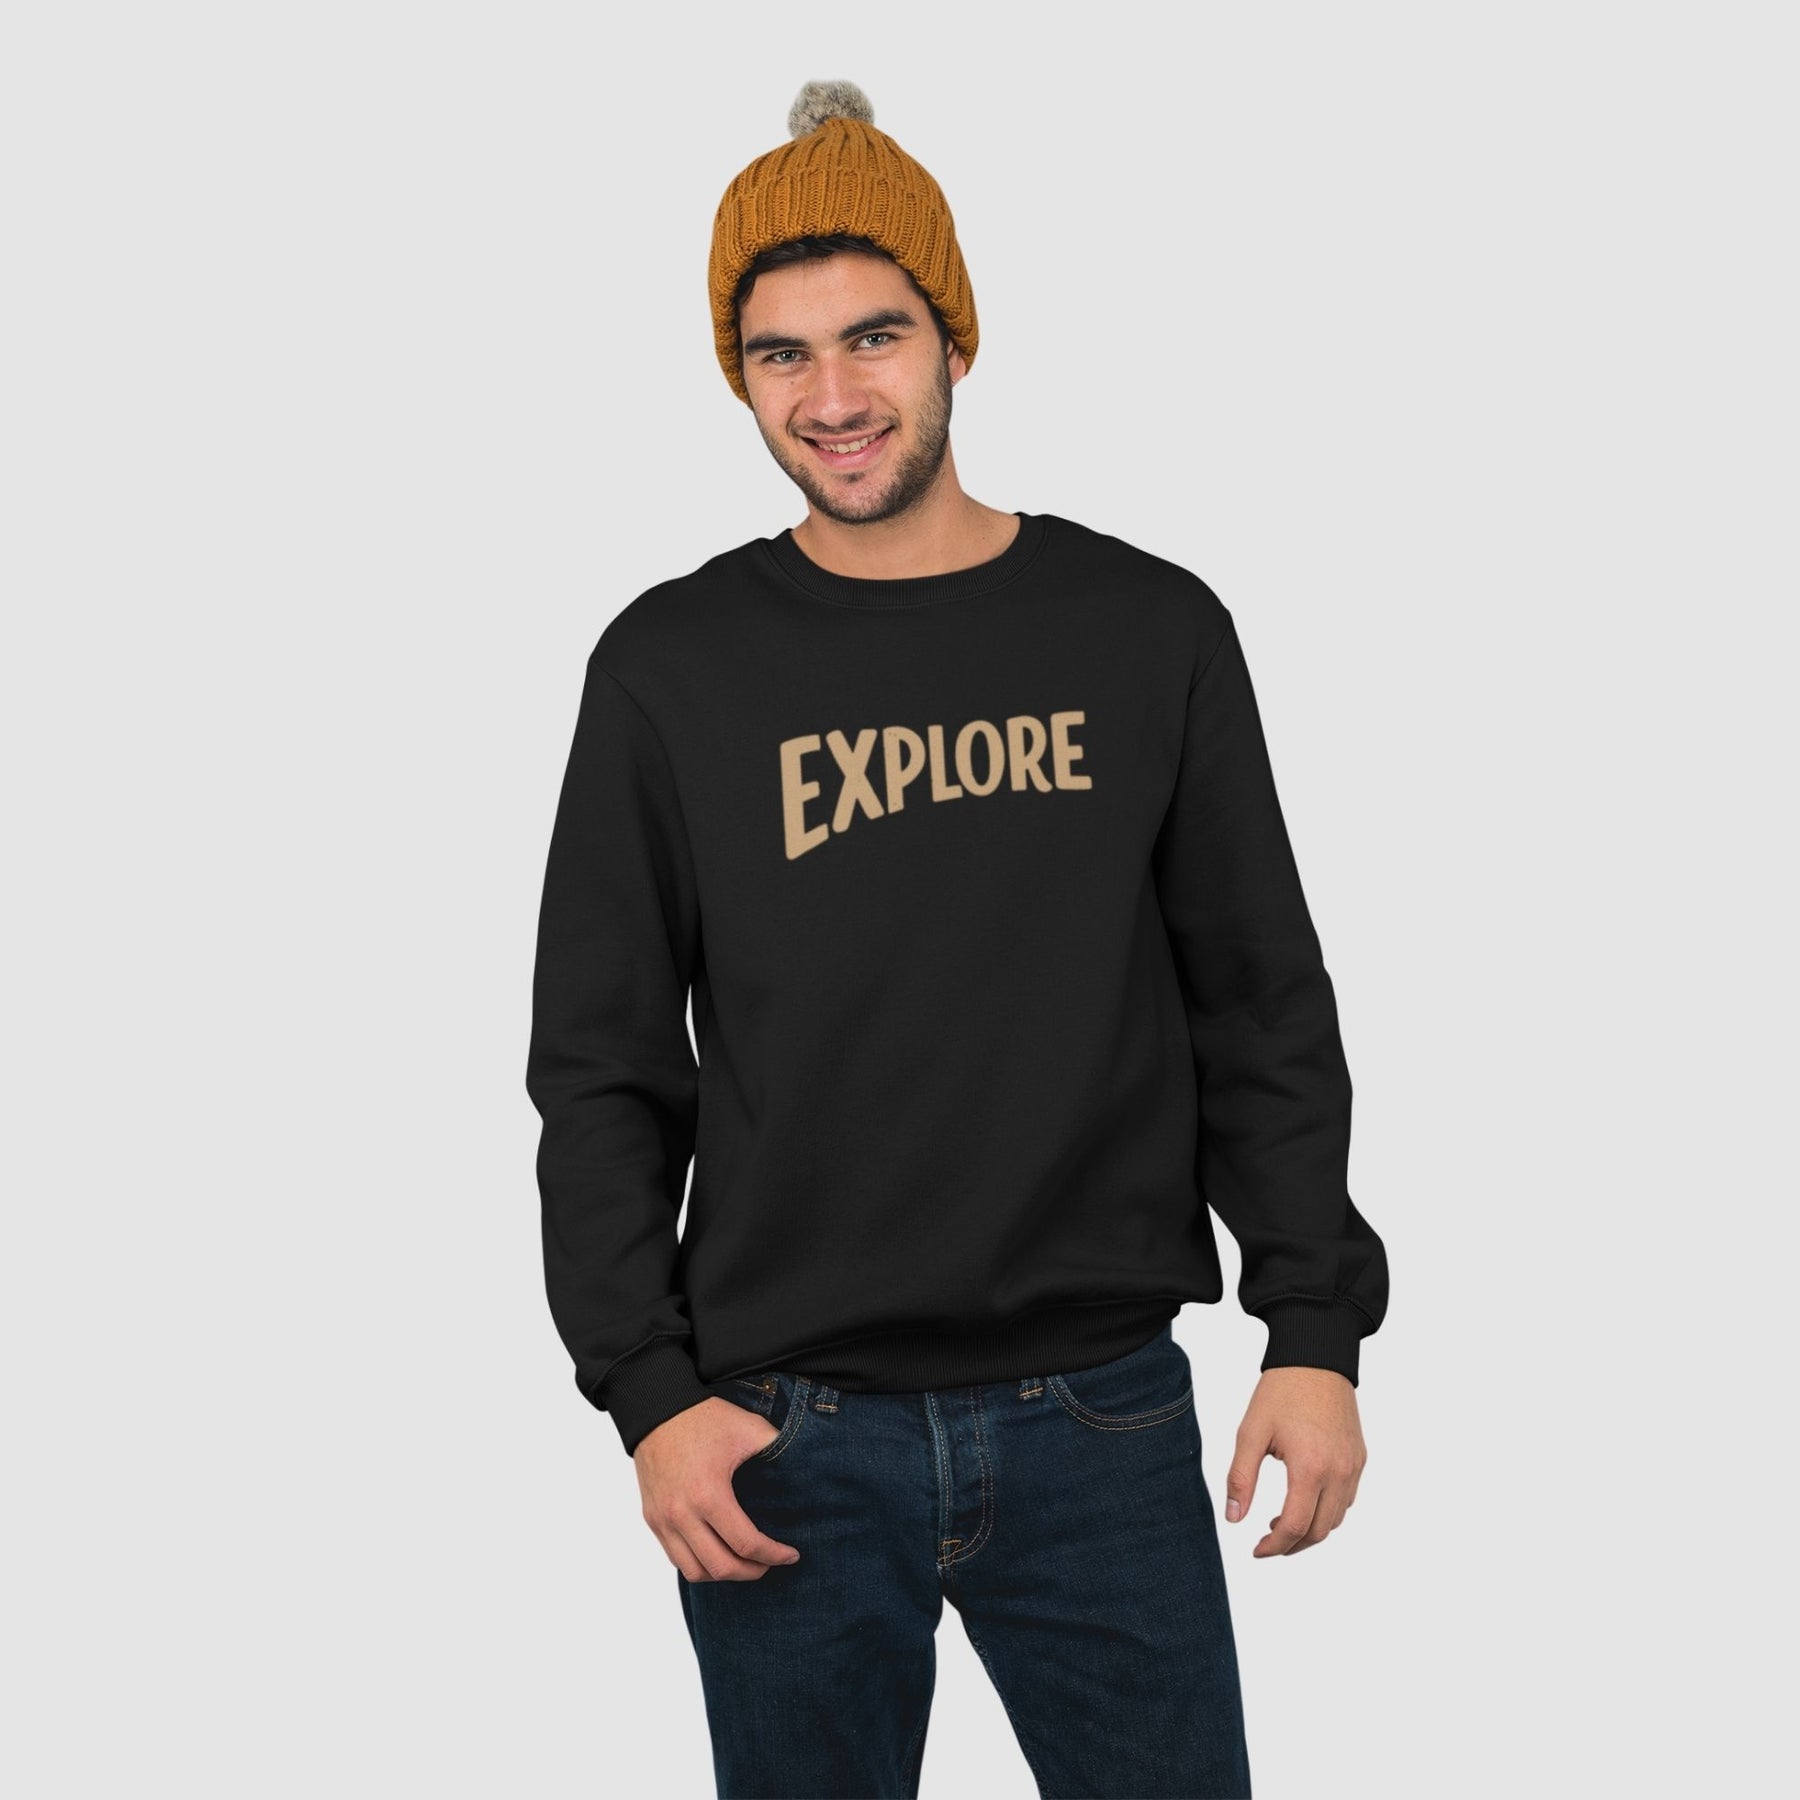 explore-cotton-printed-unisex-black-men-model-sweatshirt-gogirgit-com